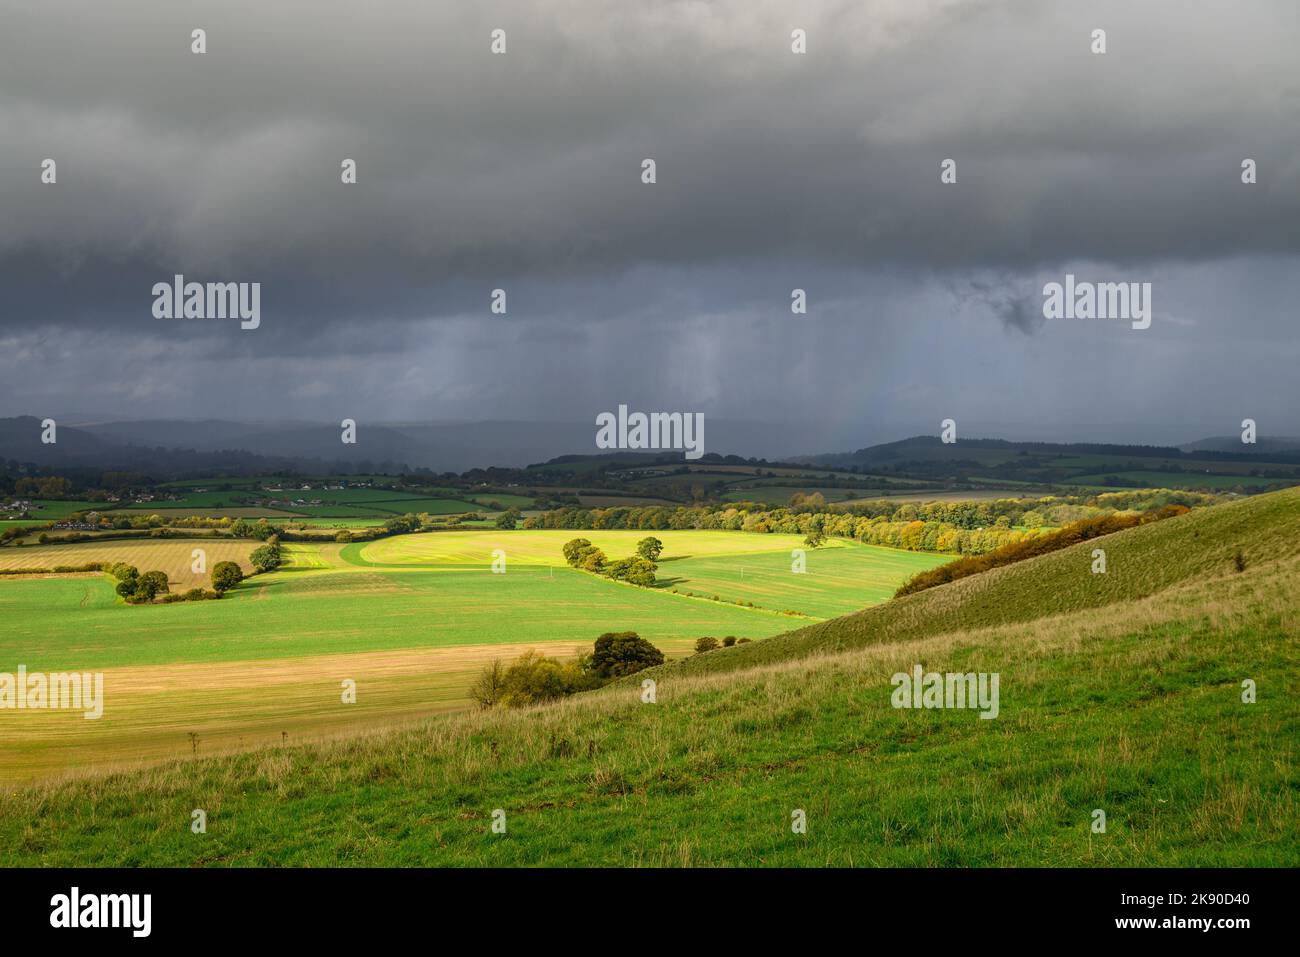 Météo orageux et pluie dans une vue sur la campagne du Dorset du Wiltshire du Sud depuis Cranborne Chase, Angleterre, Royaume-Uni, octobre Banque D'Images